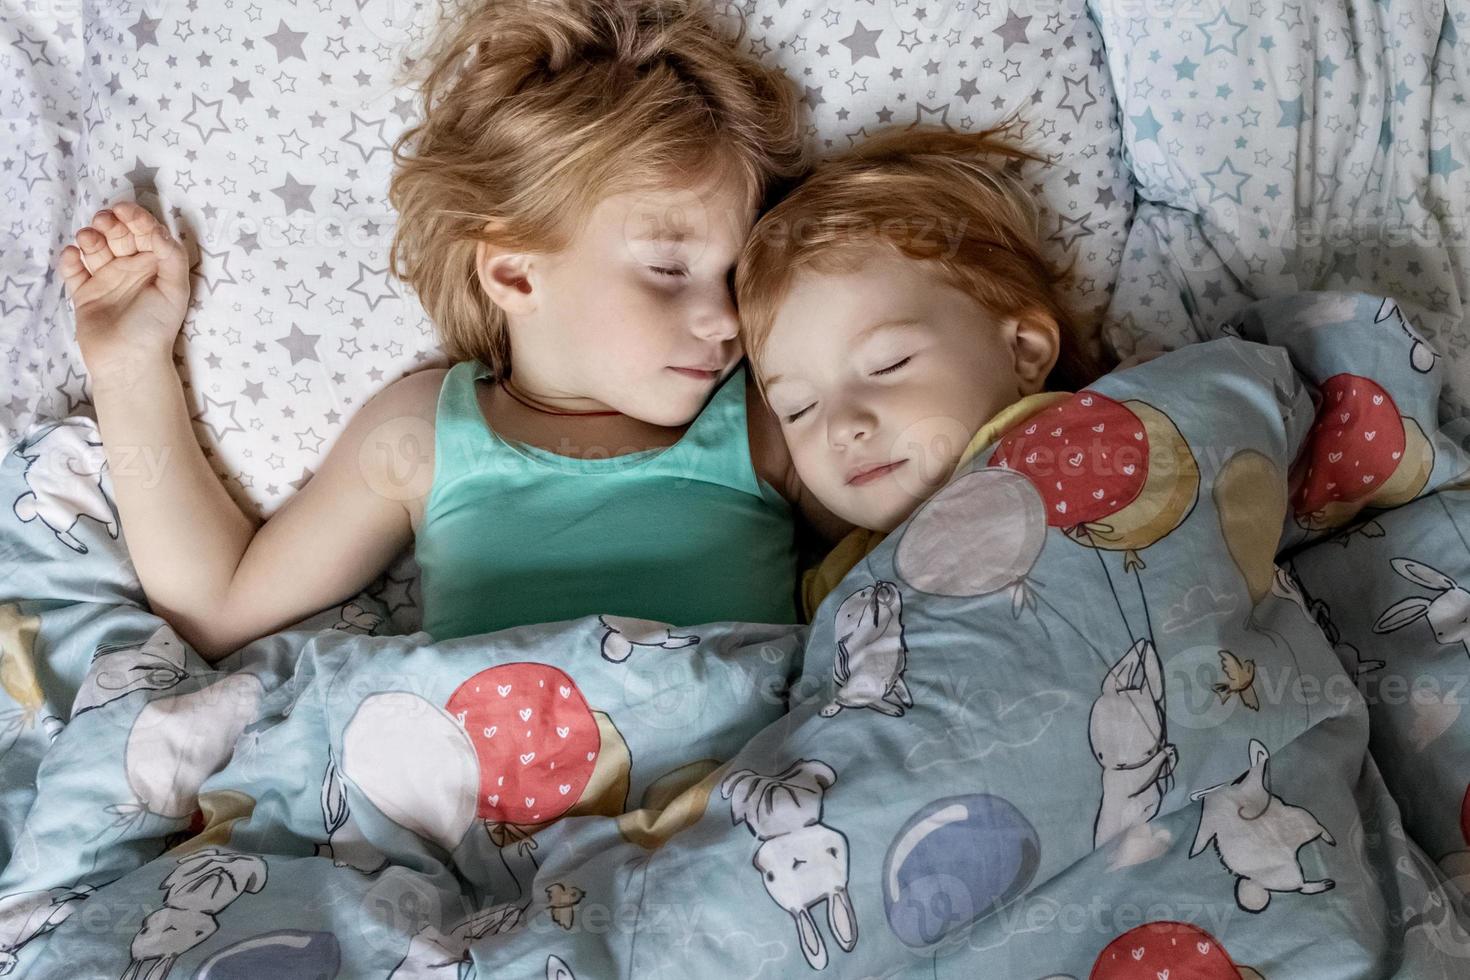 Dos hermanitas hermanas durmiendo en un abrazo en la cama debajo de una manta foto